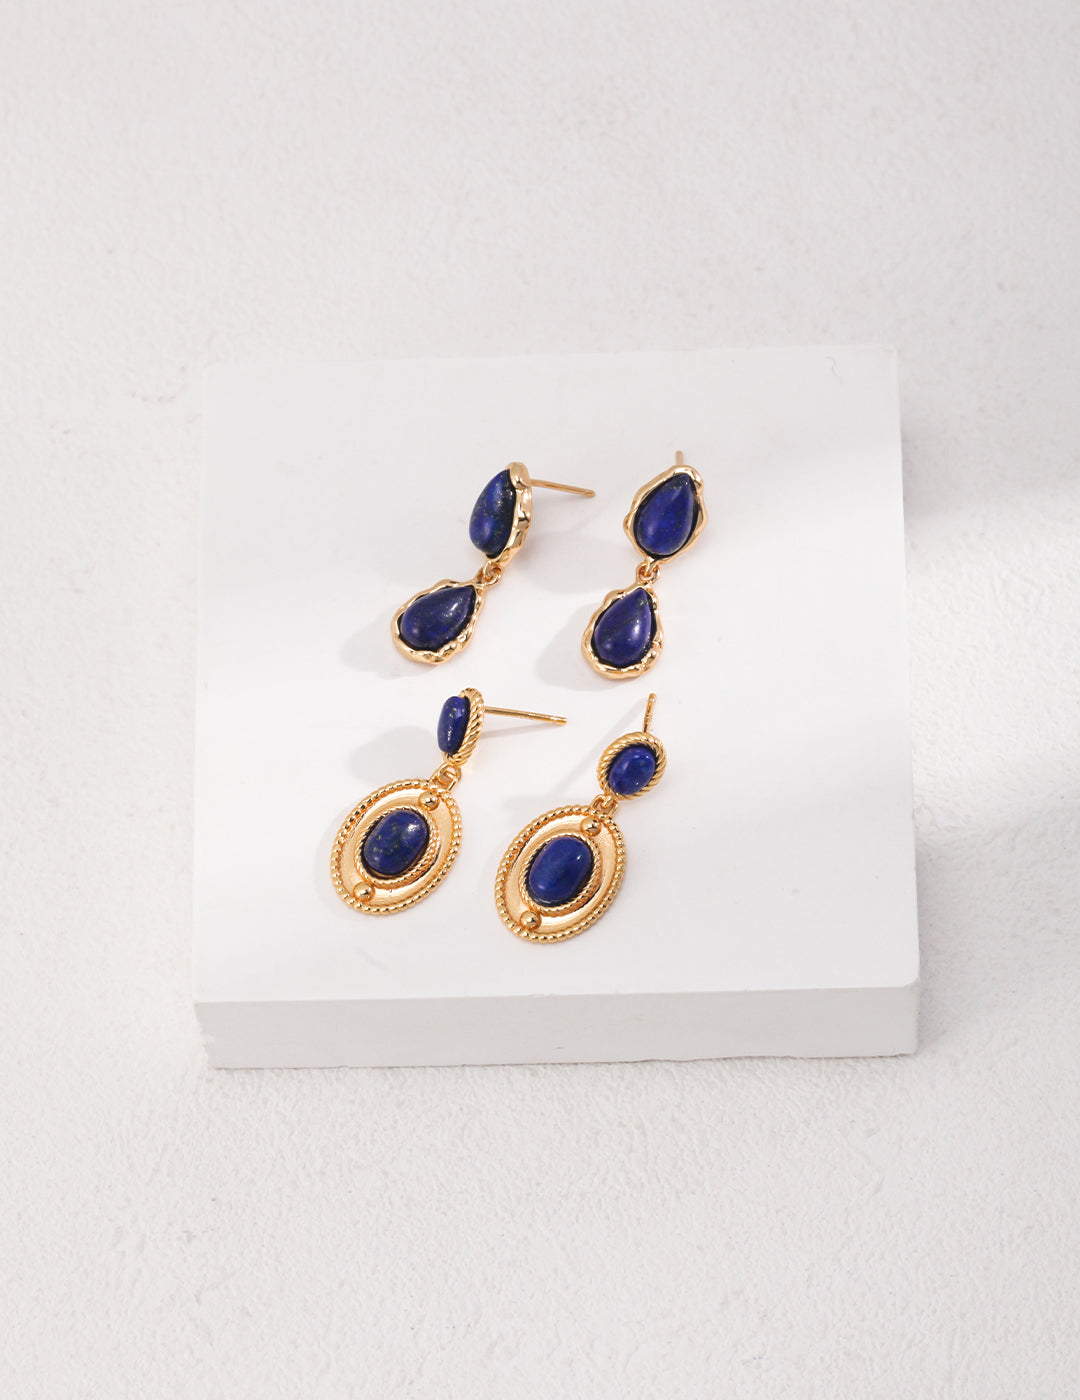 Two Drop-shaped Gold Lapis Lazuli Earrings